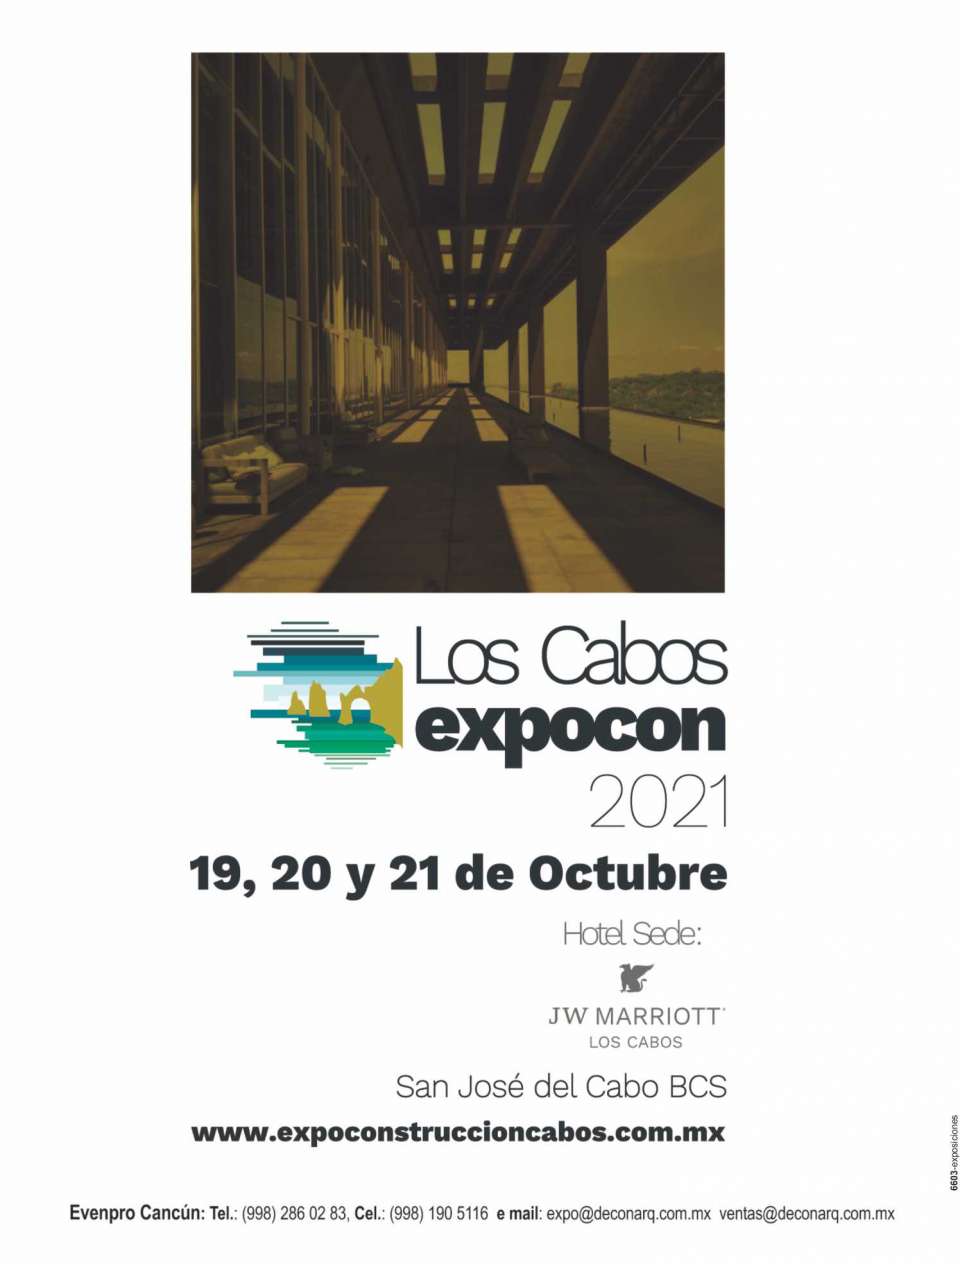 Expo Construccion Los Cabos del 19 al 21 de Octubre 2021 en San Jose del Cabo